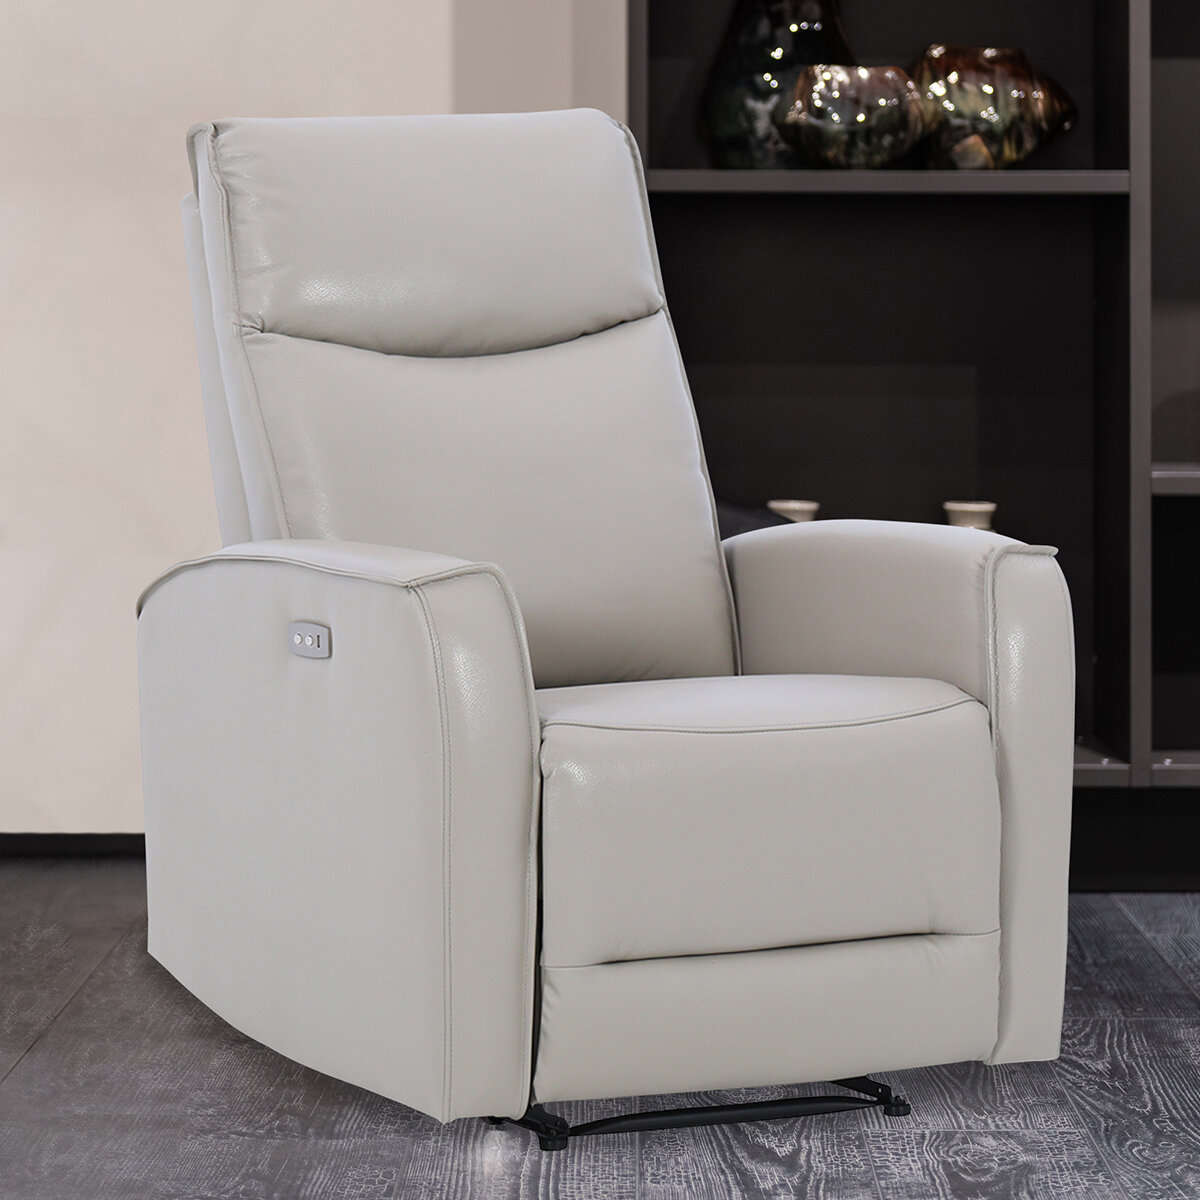 Beneficios de comprar un sillón reclinable